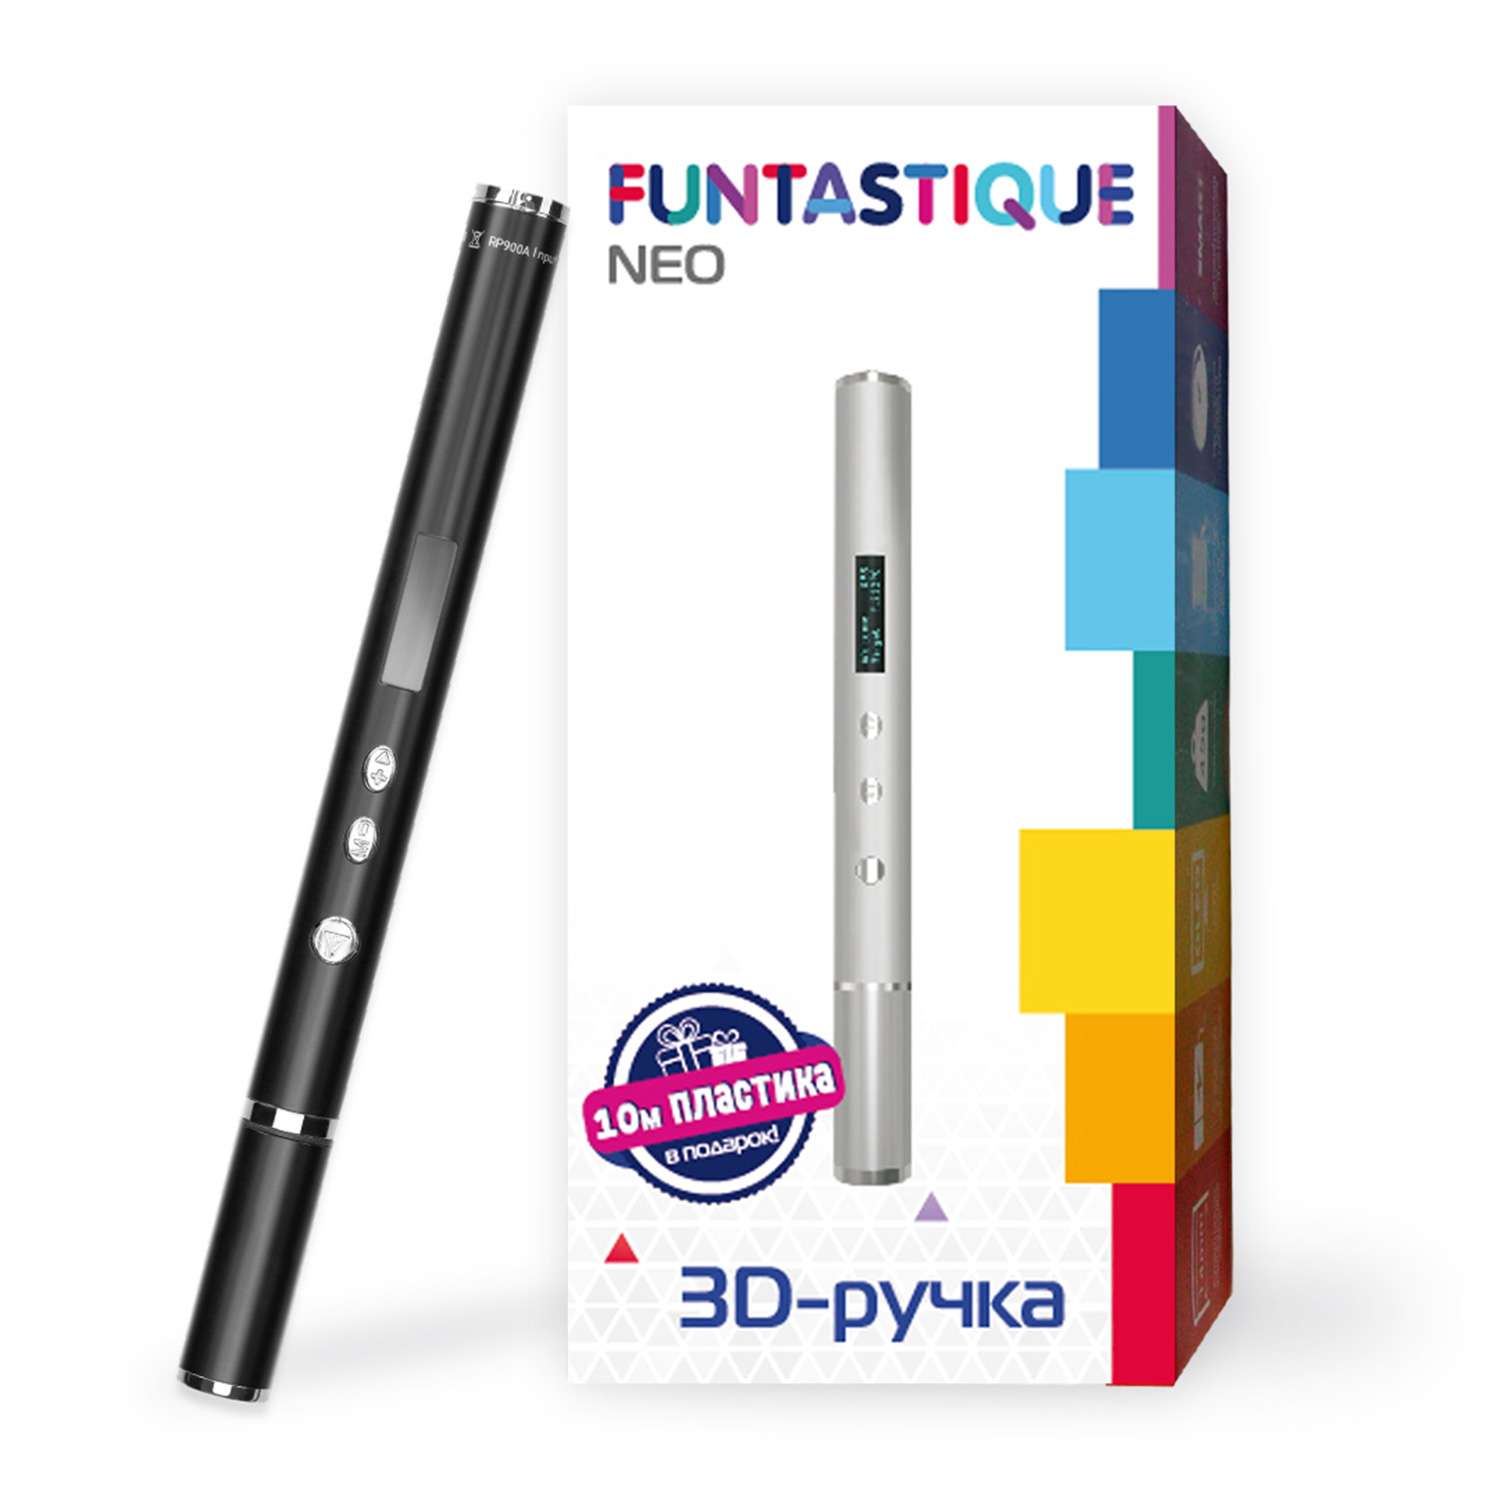 3D-ручка FUNTASTIQUE Neo черная - фото 2